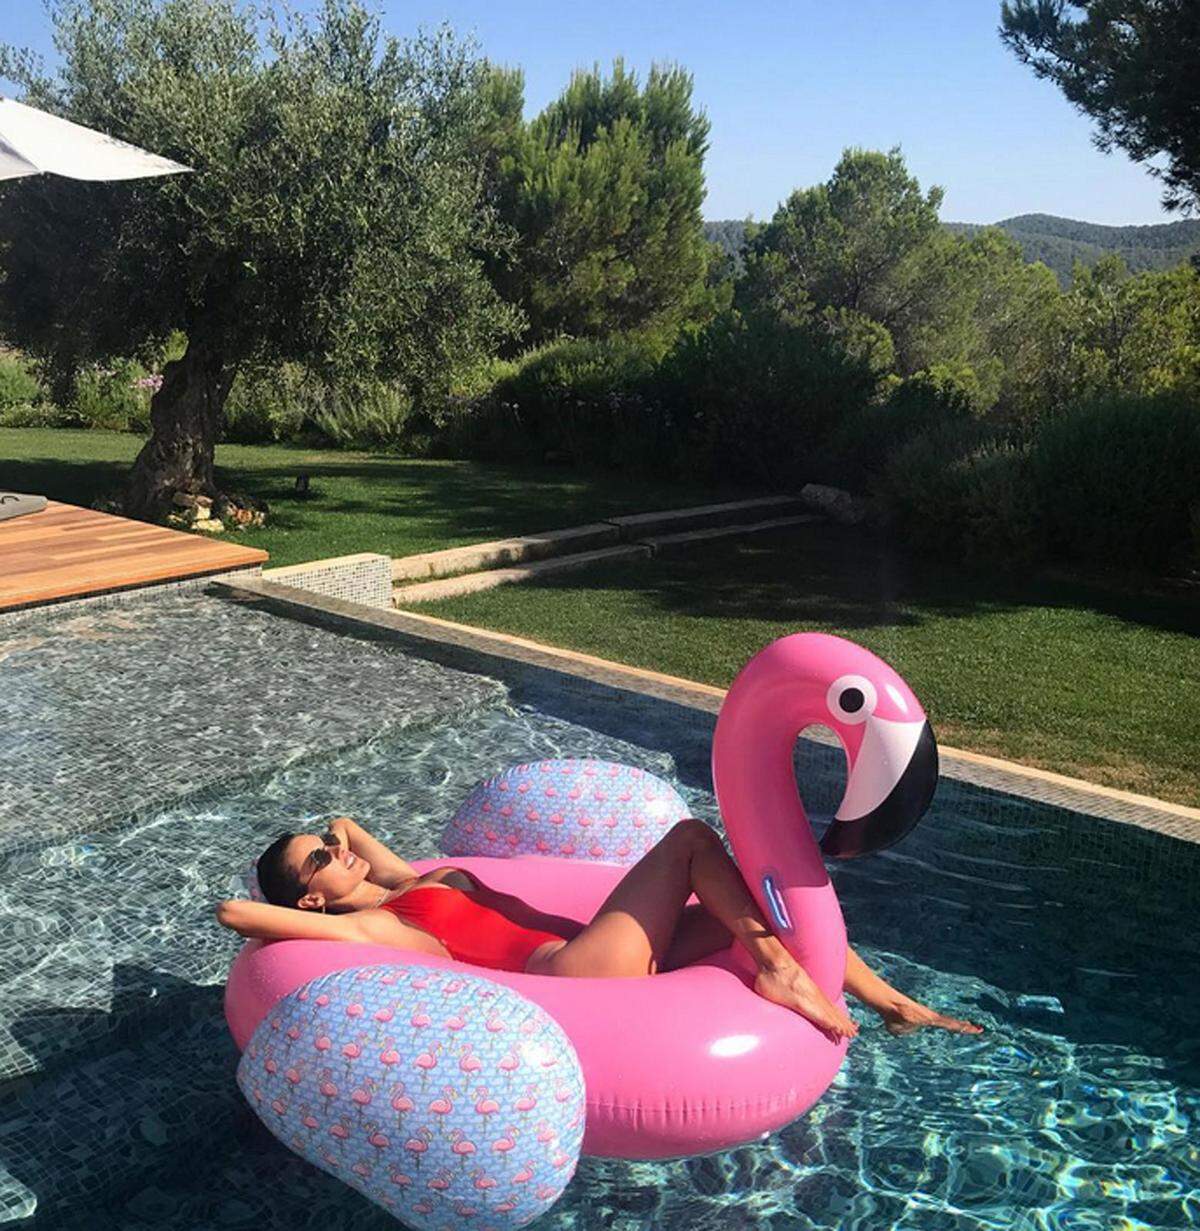 Ganz im Trend - auch mit dem aufblasbaren Flamingo - liegt Alessandra Ambrosio.